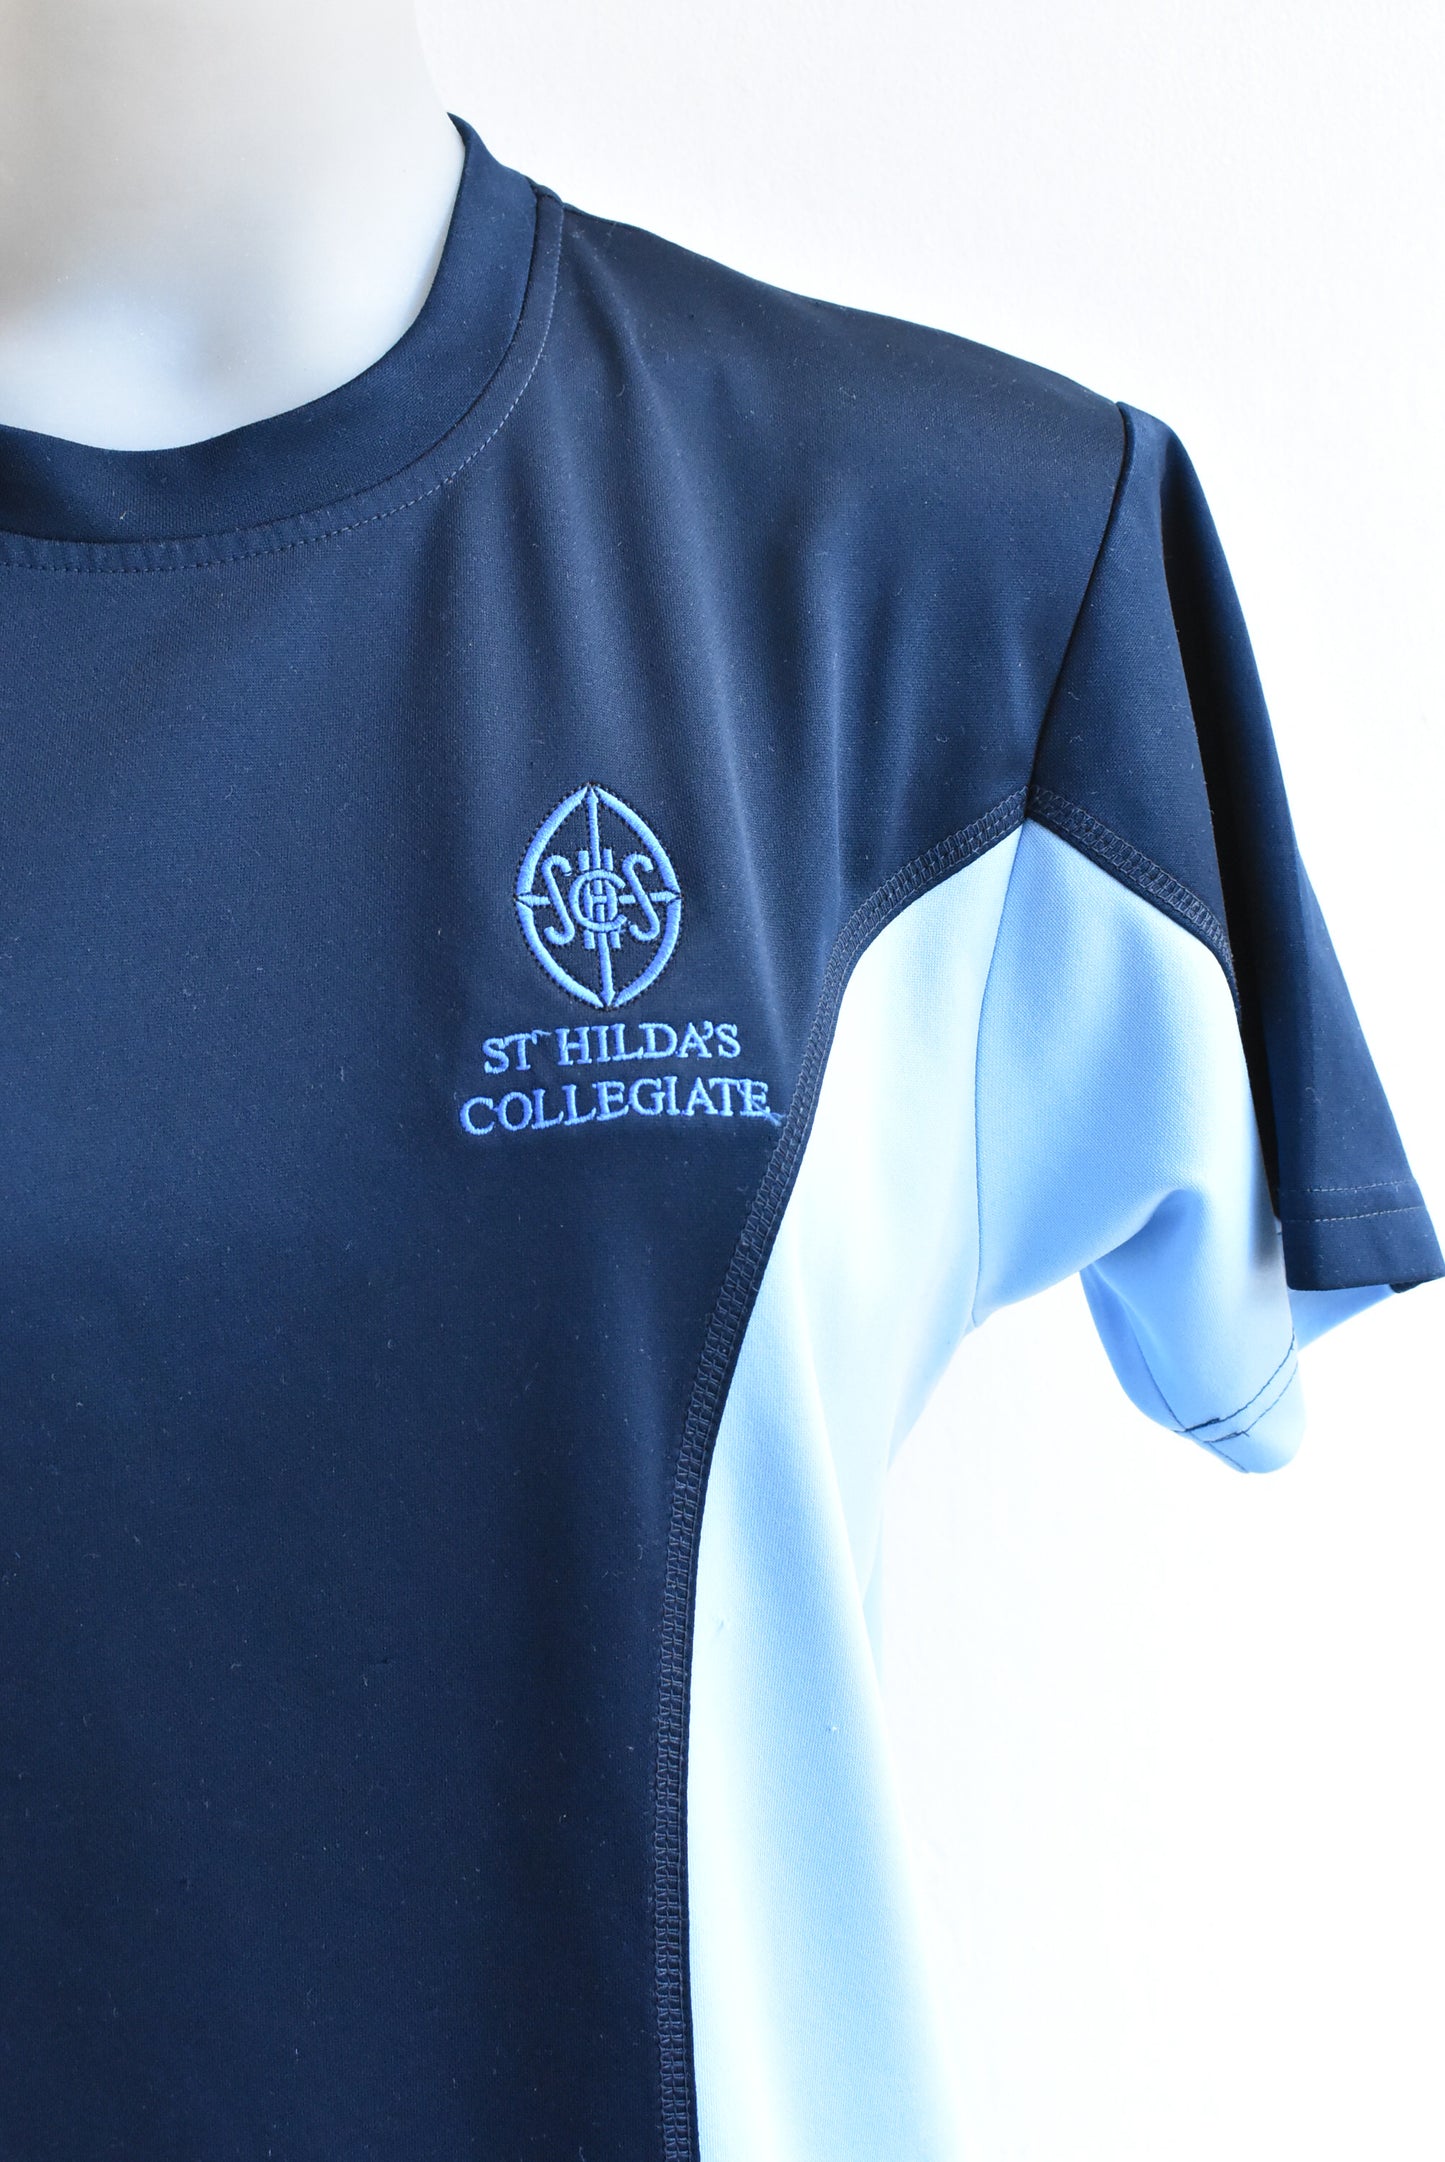 St Hilda's Collegiate Dri Gear PE t-shirt, size S